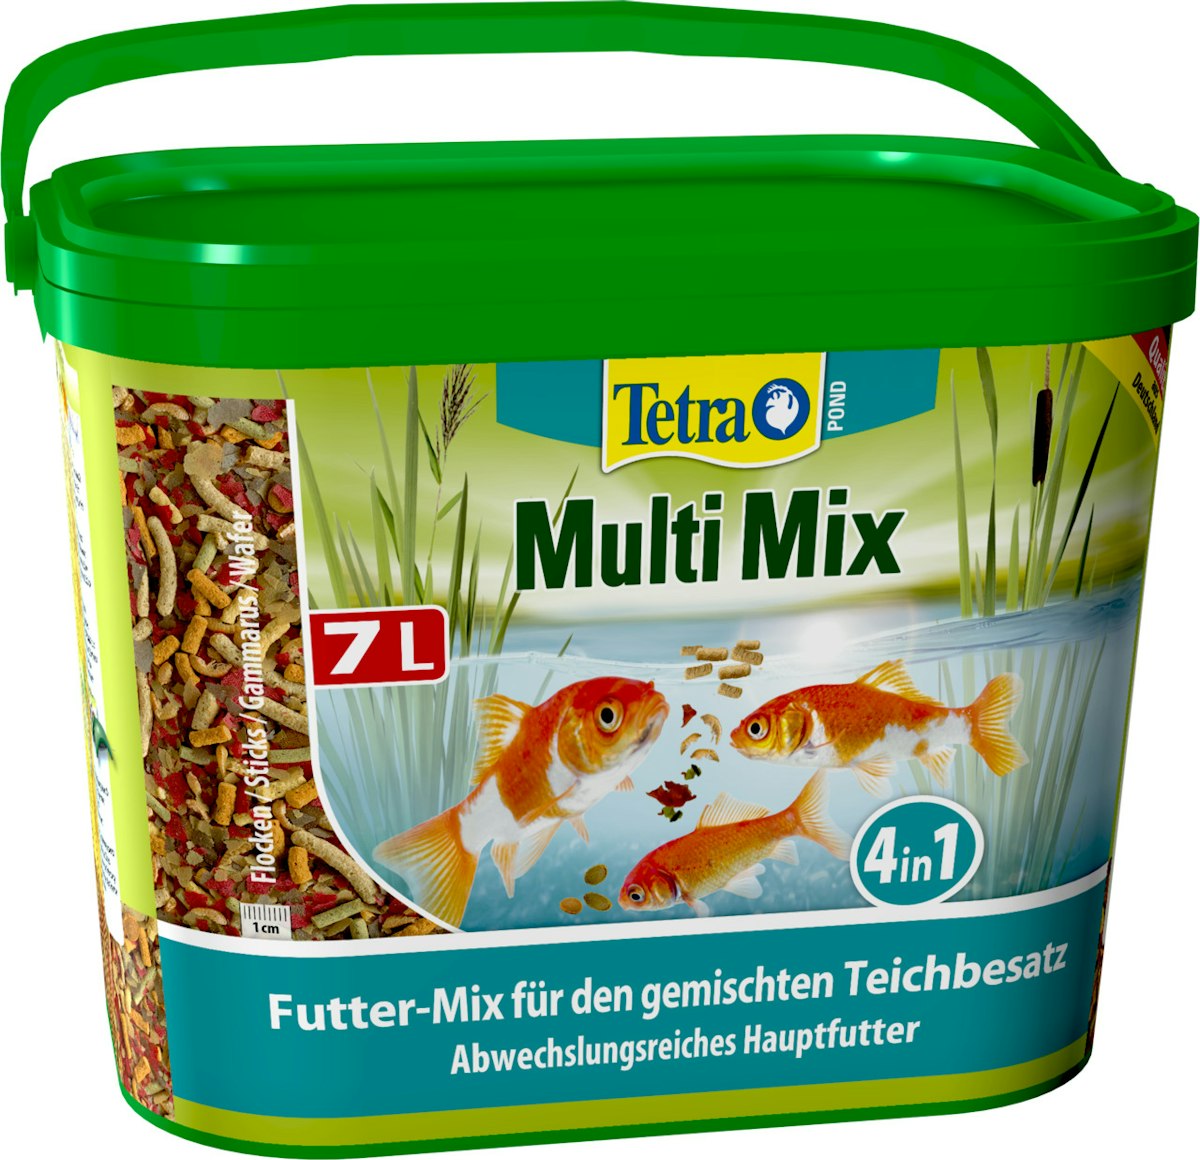 Tetra Pond Multi Mix 7 Liter Teichfischfutter von Tetra